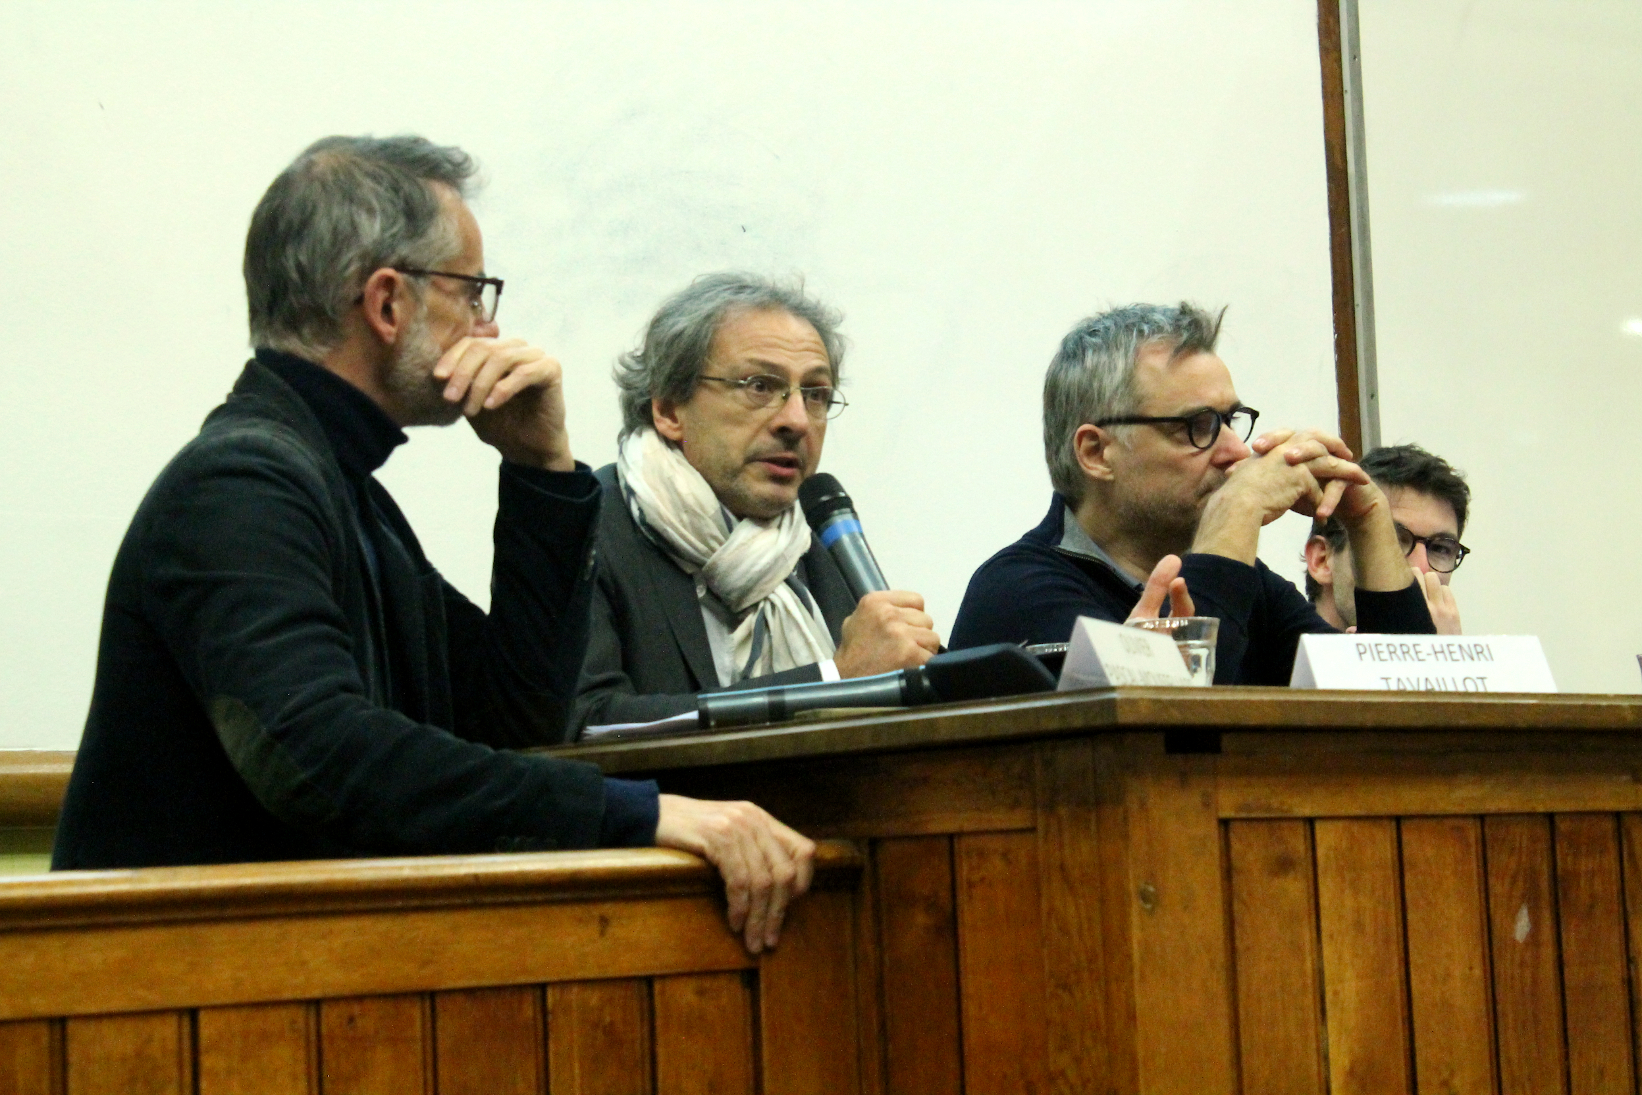 Le débat, animé par Olivier Pascal-Moussellard de Télérama (à gauche), a réuni (de gauche à droite) Pierre-Henri Tavoillot, Emmanuel Dockès et Antoine Dulin.